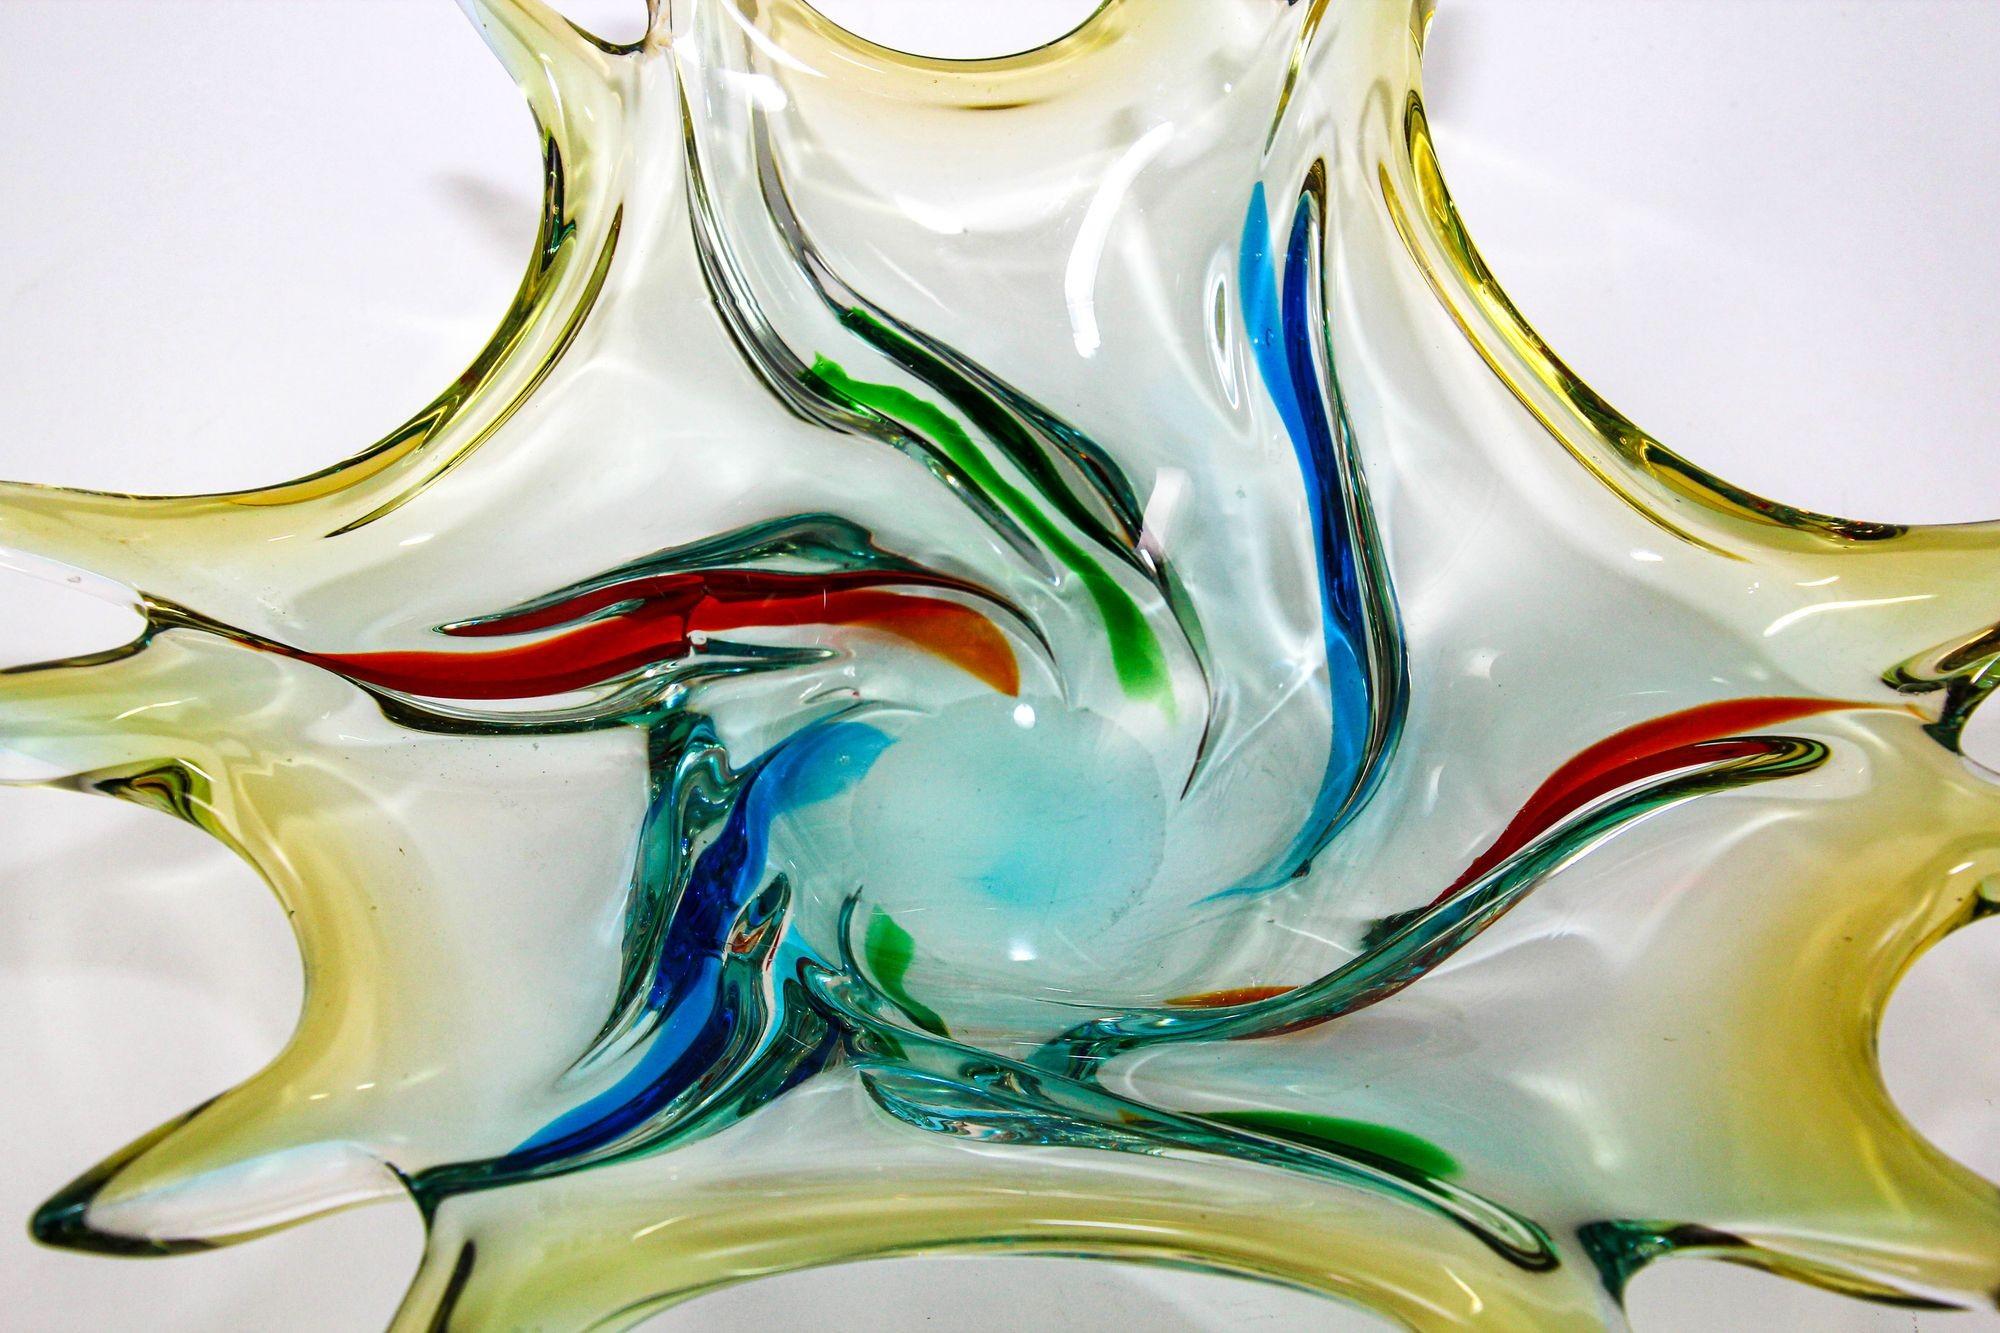 Vintage Sculptural Italian Murano Art Glass Fruit Bowl Centerpiece 1960s.
Mundgeblasene Fruchtschale aus blauem, grünem, rotem und gelbem Murano-Kunstglas, handgefertigt in Italien in den 1960er Jahren.
Skulpturale, moderne, dekorative Schale aus